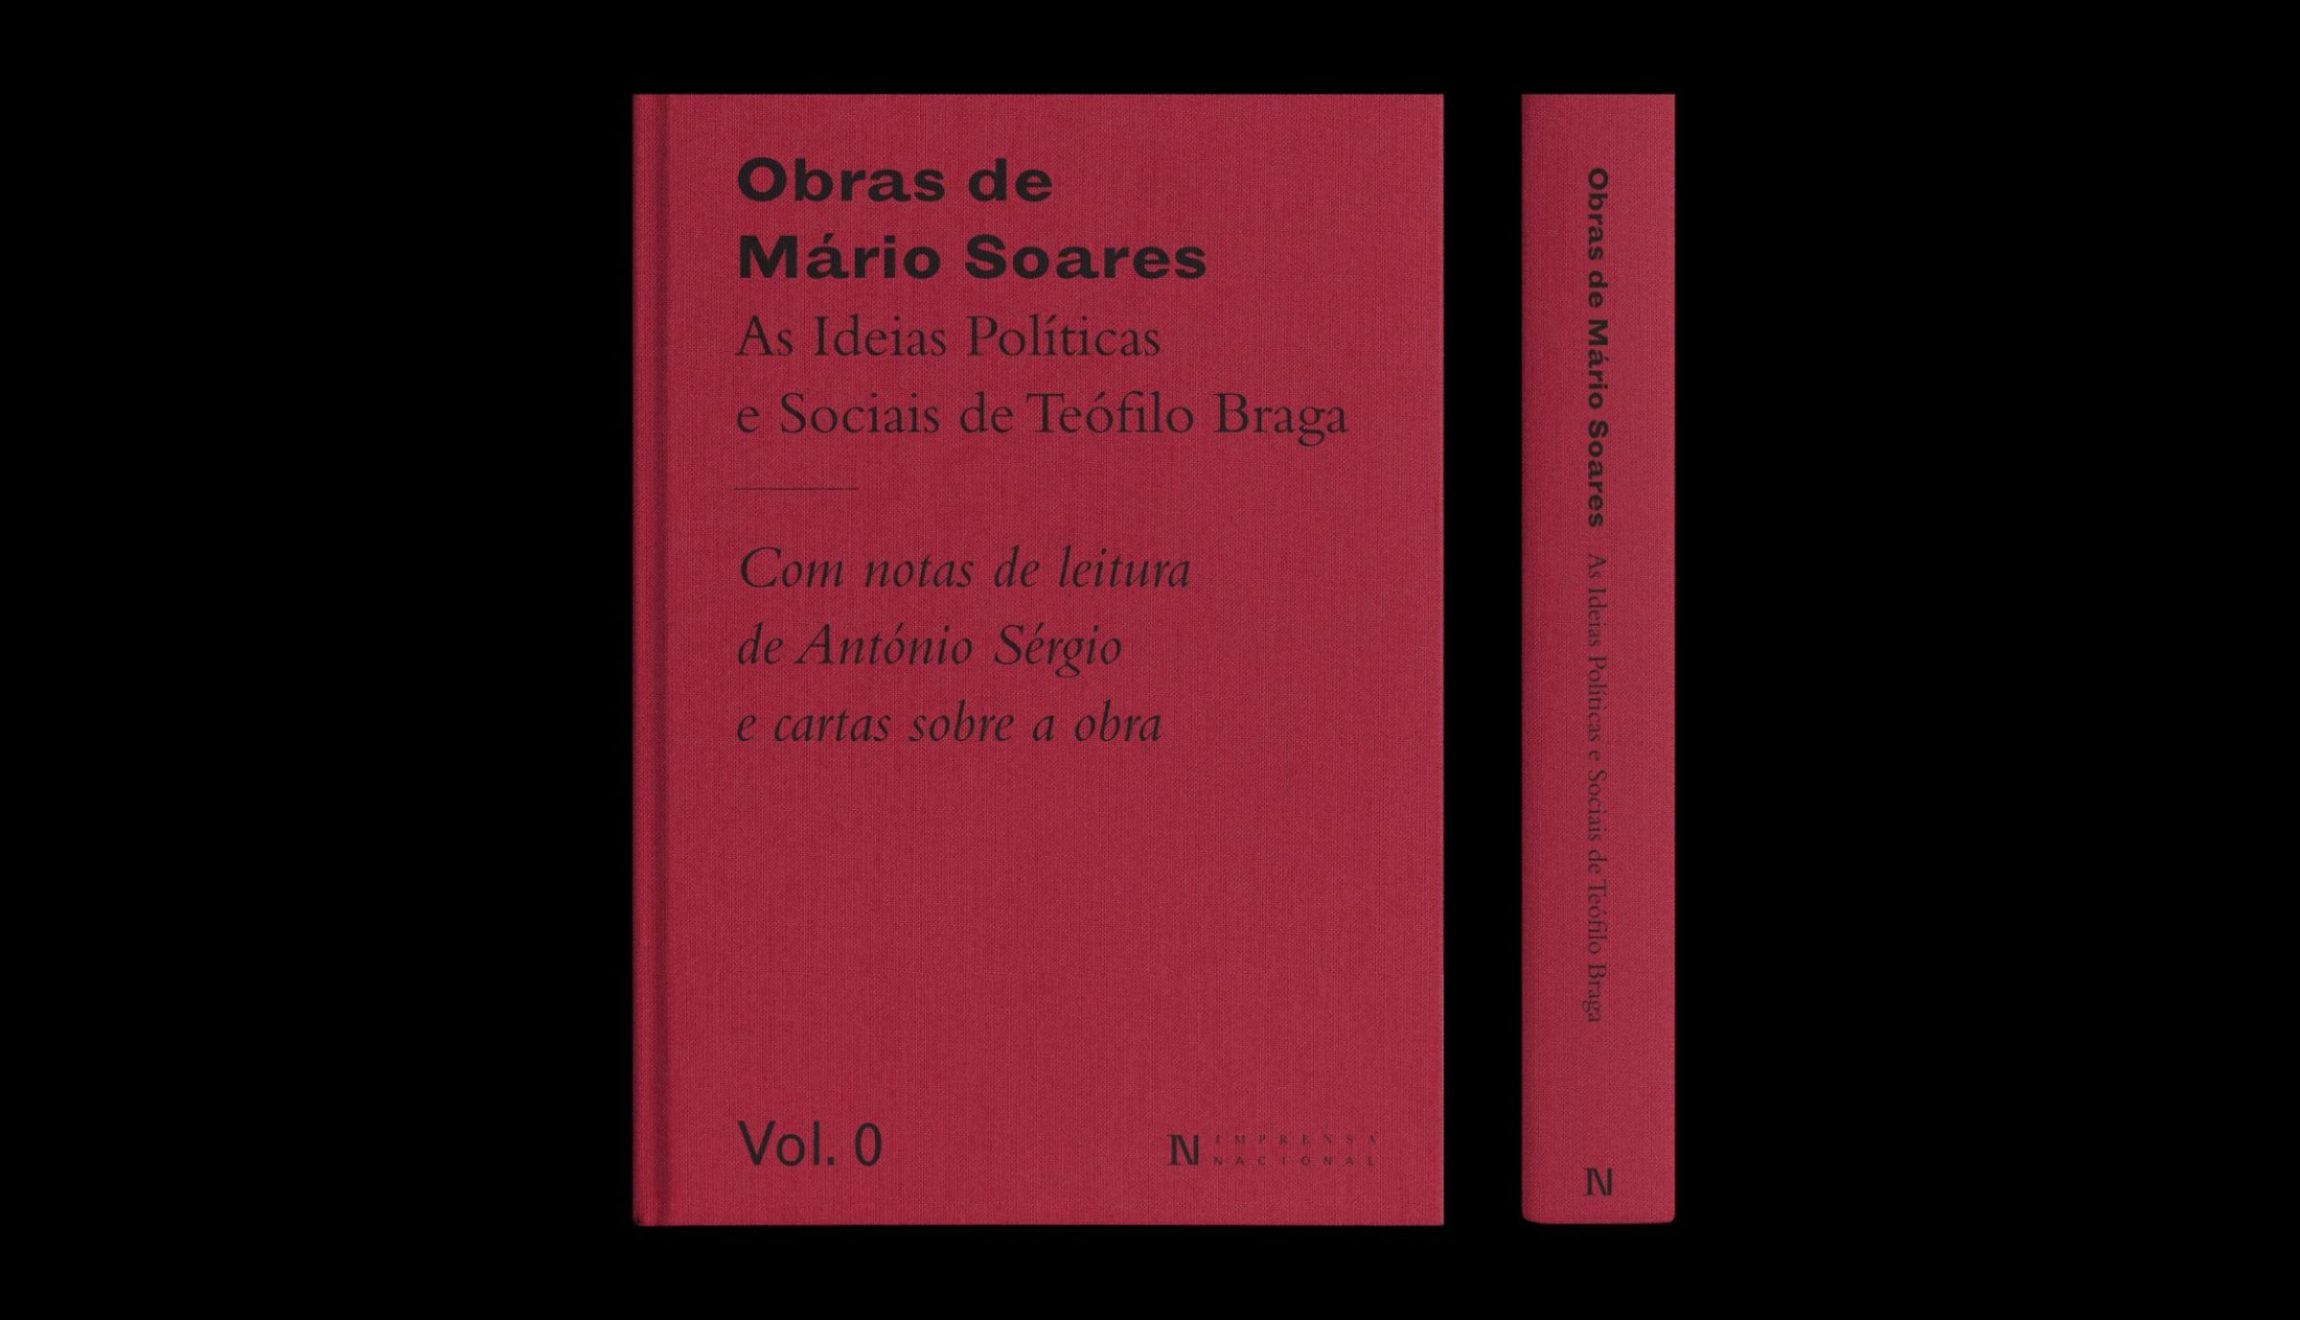 Imprensa Nacional lança volume de apresentação da coleção Obras de Mário Soares